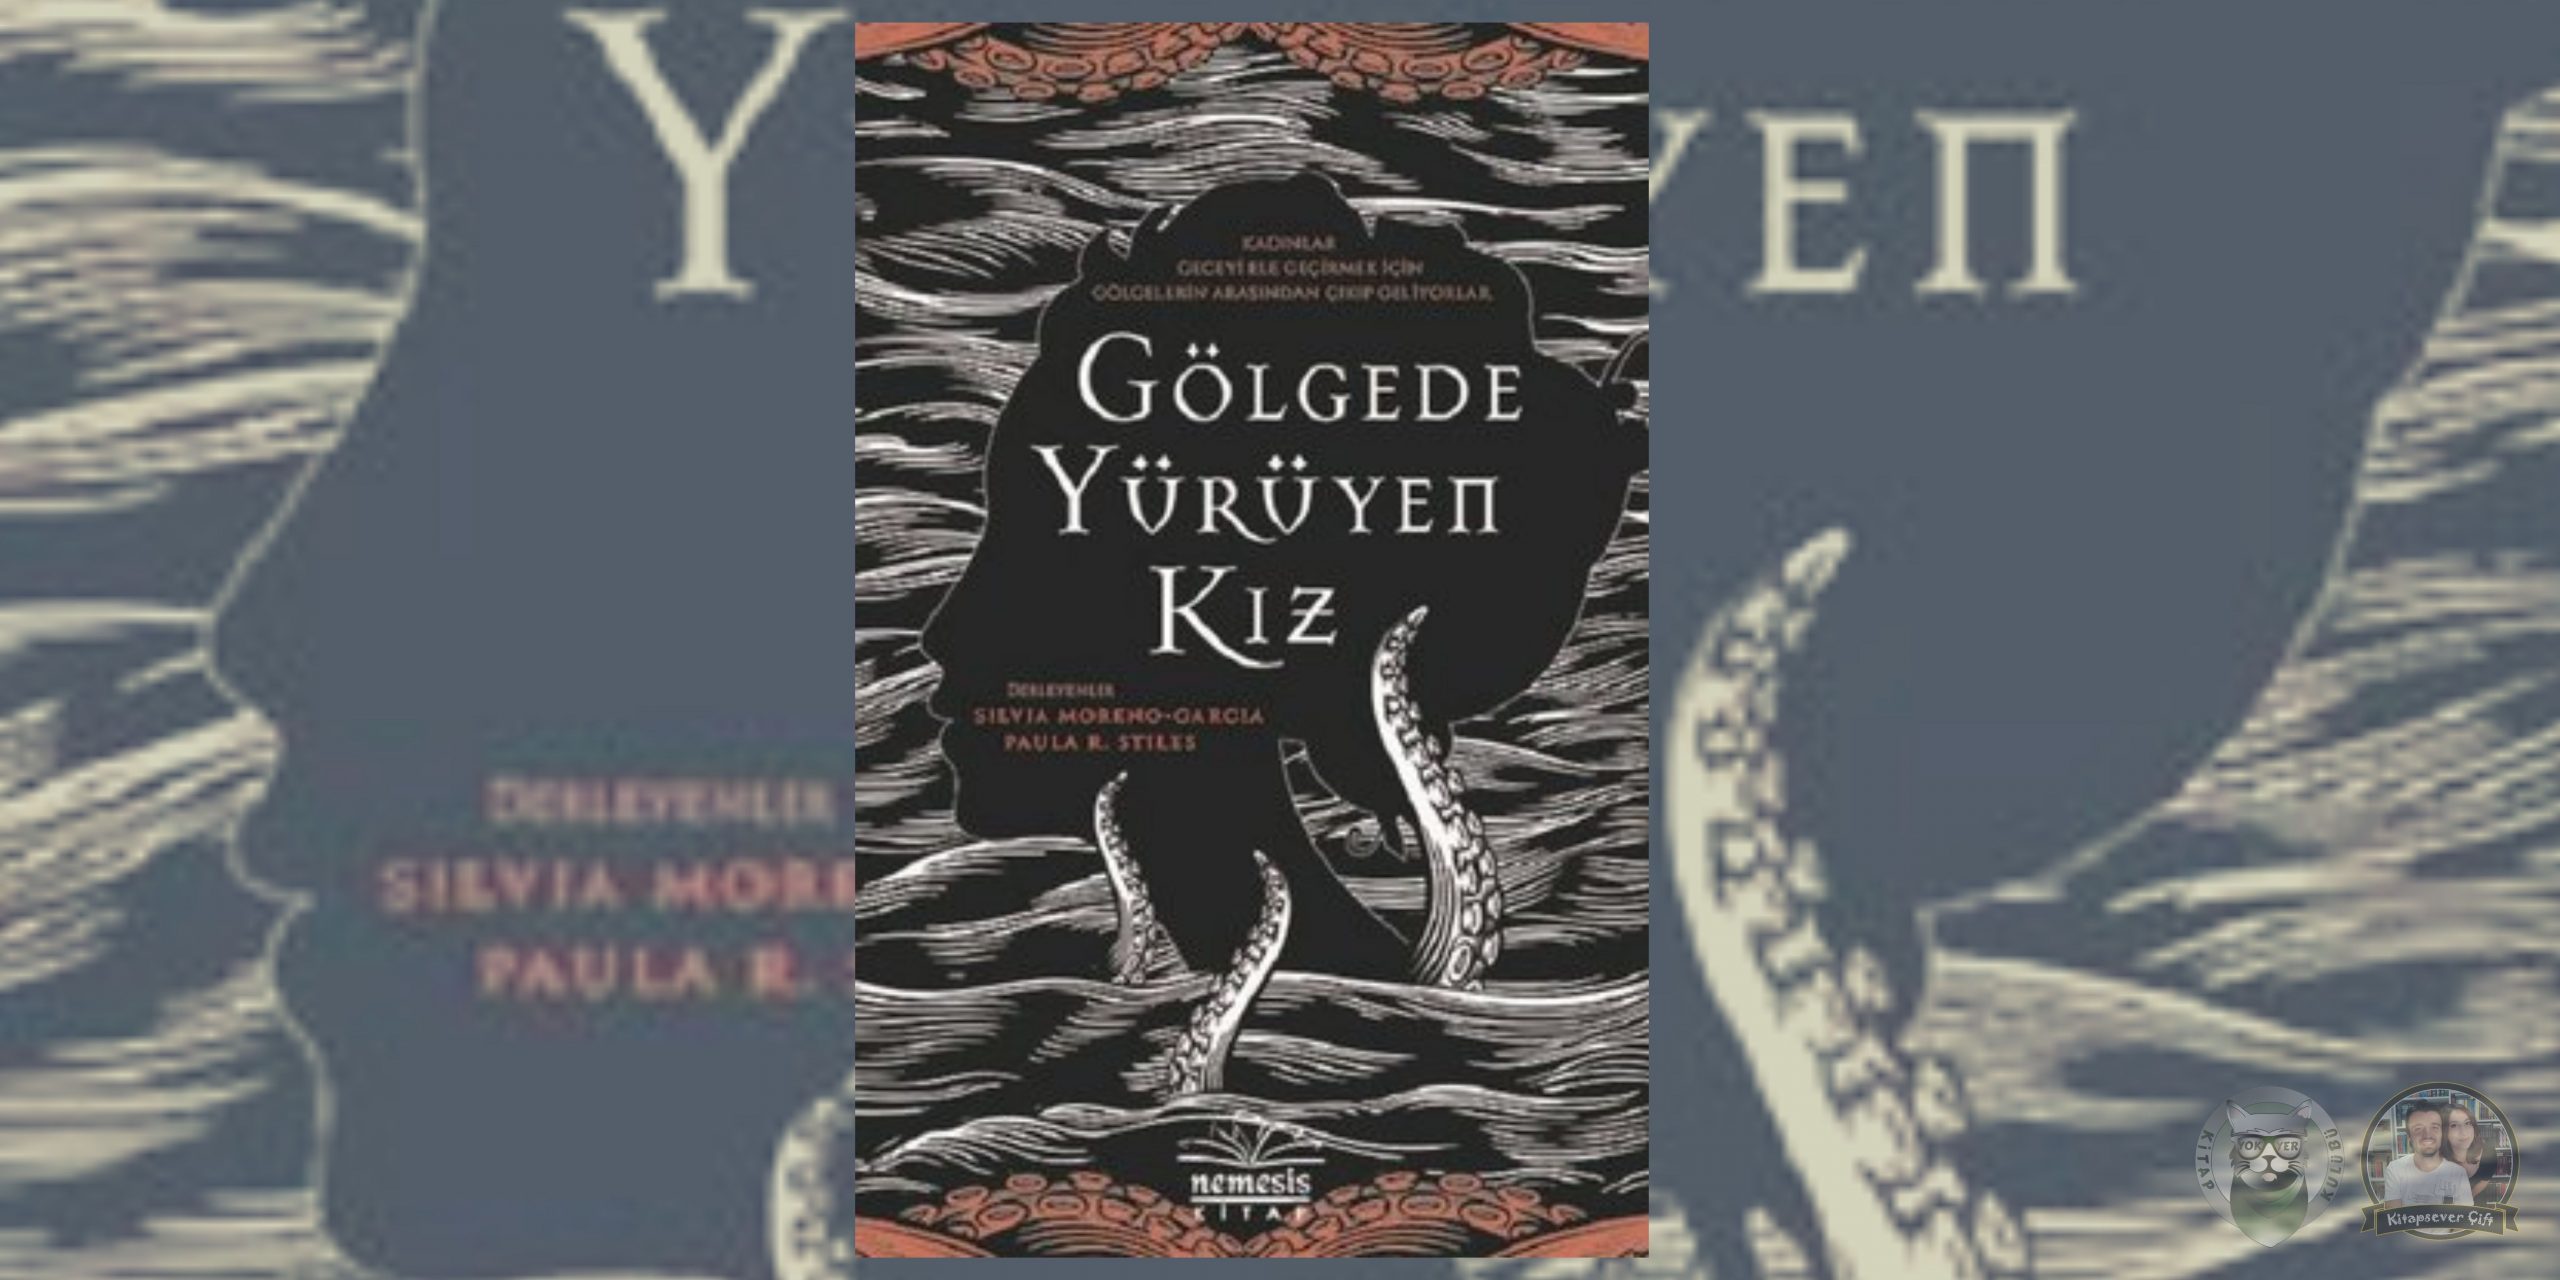 20 atmosferik gotik roman 22 – golgede yuruyen kiz scaled